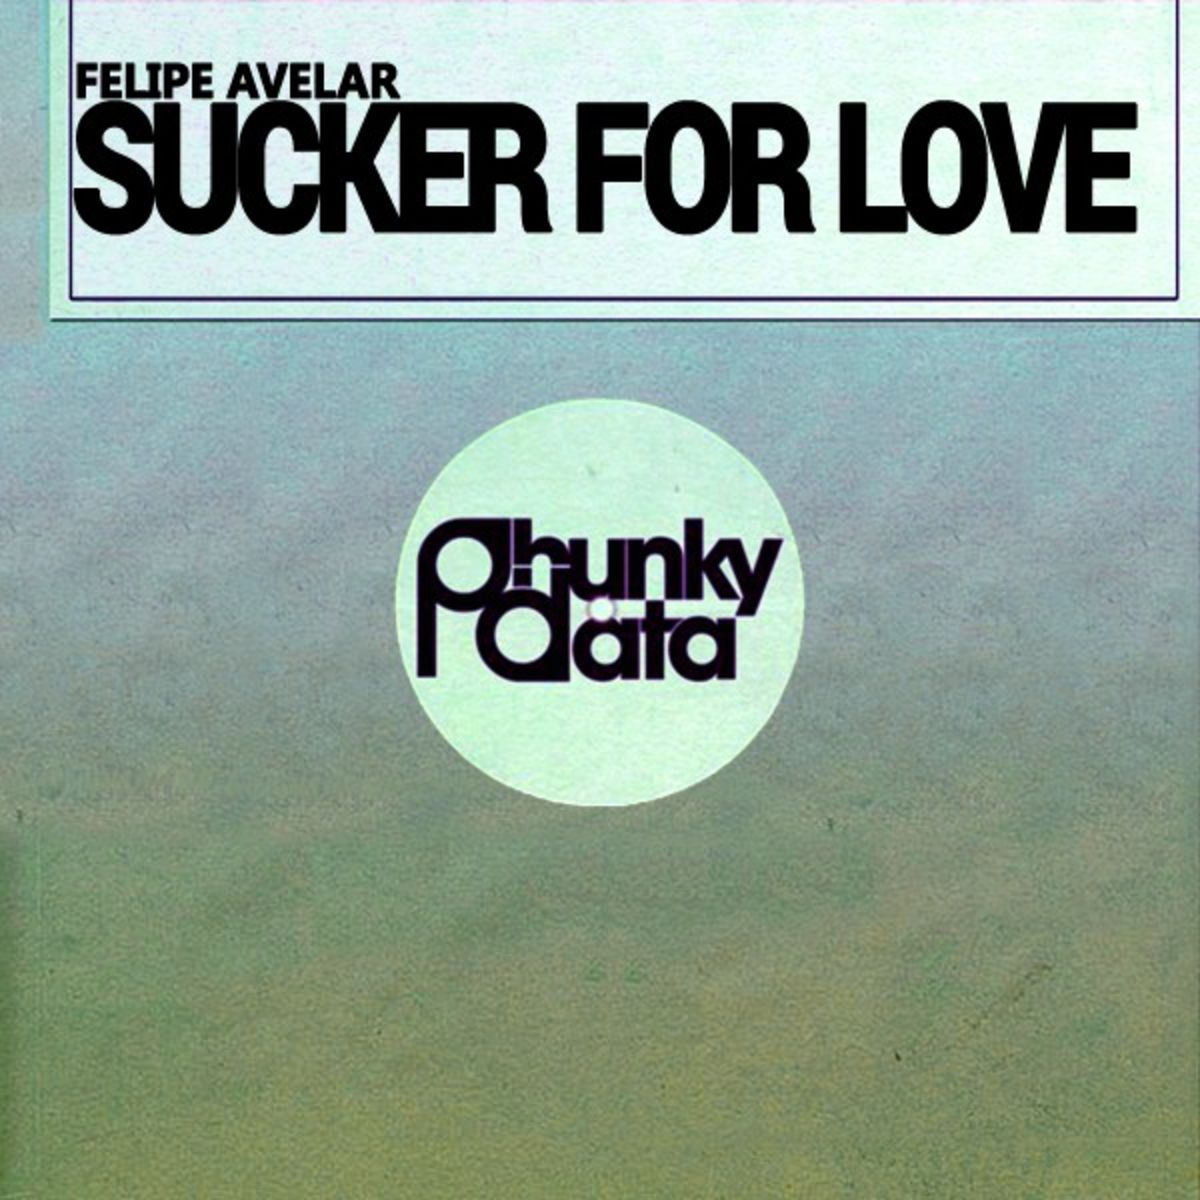 Felipe Avelar - Sucker for Love / Phunky Data